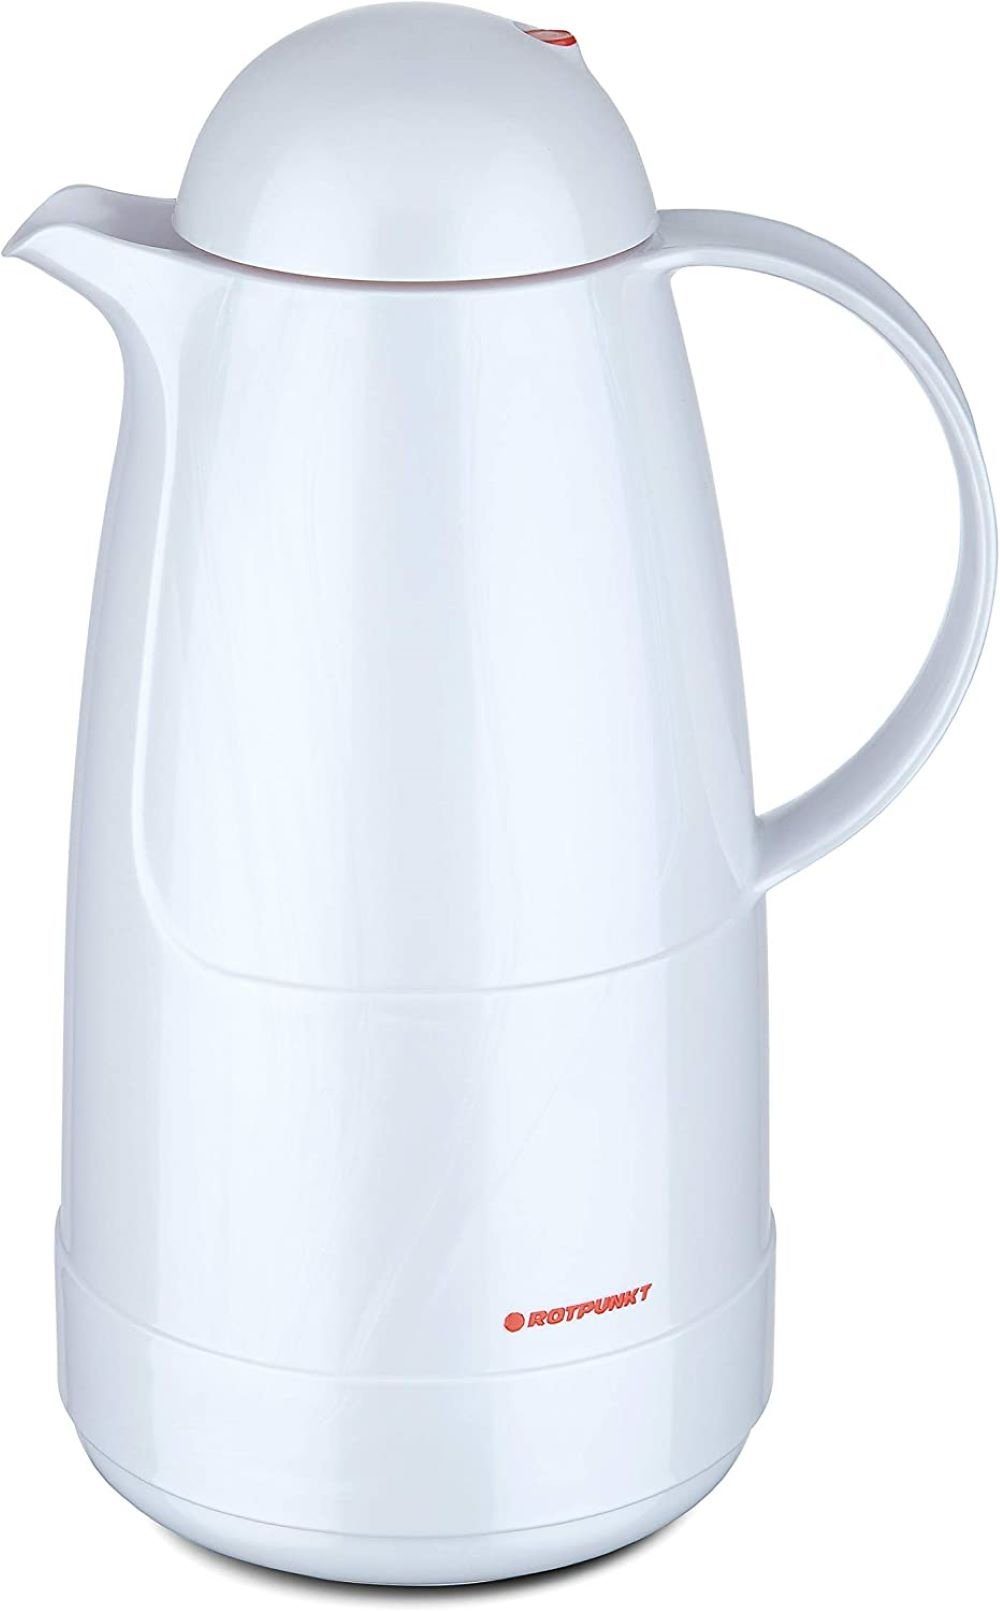 ROTPUNKT Isolierkanne 1,5 Liter 215 Glaseinsatz I BPA-Frei I, 1,5 l, (Kaffeekanne I Teekanne), Rosalin-Glas (extra lange Isolierung) shiny white